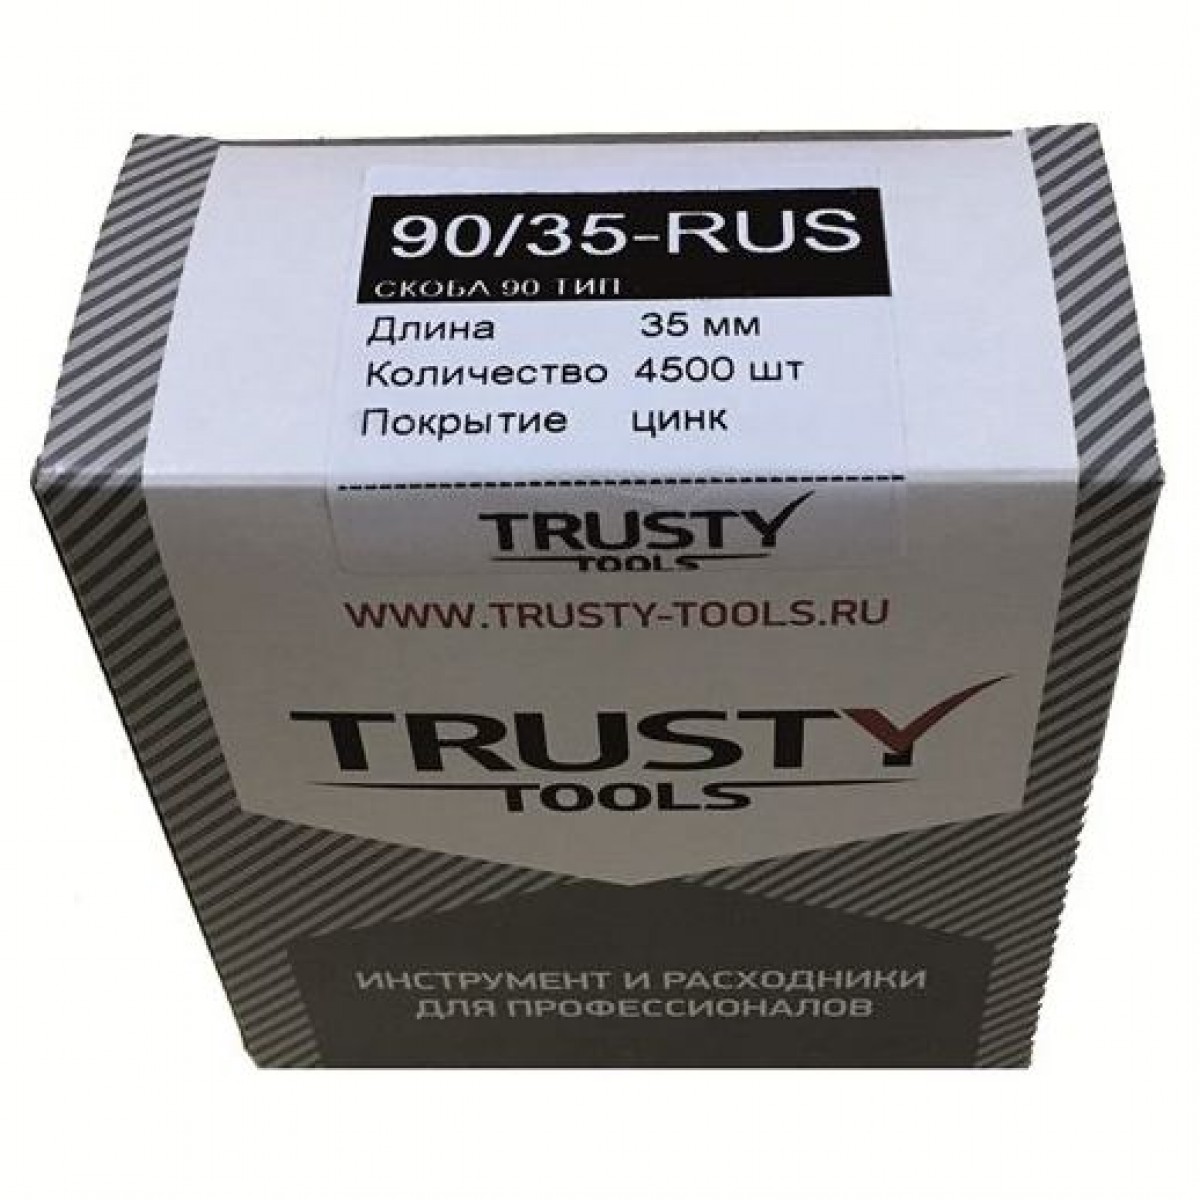 Скоба узкая Trusty 90 тип 35 мм. тип 90, KL6000 90/35-RUS